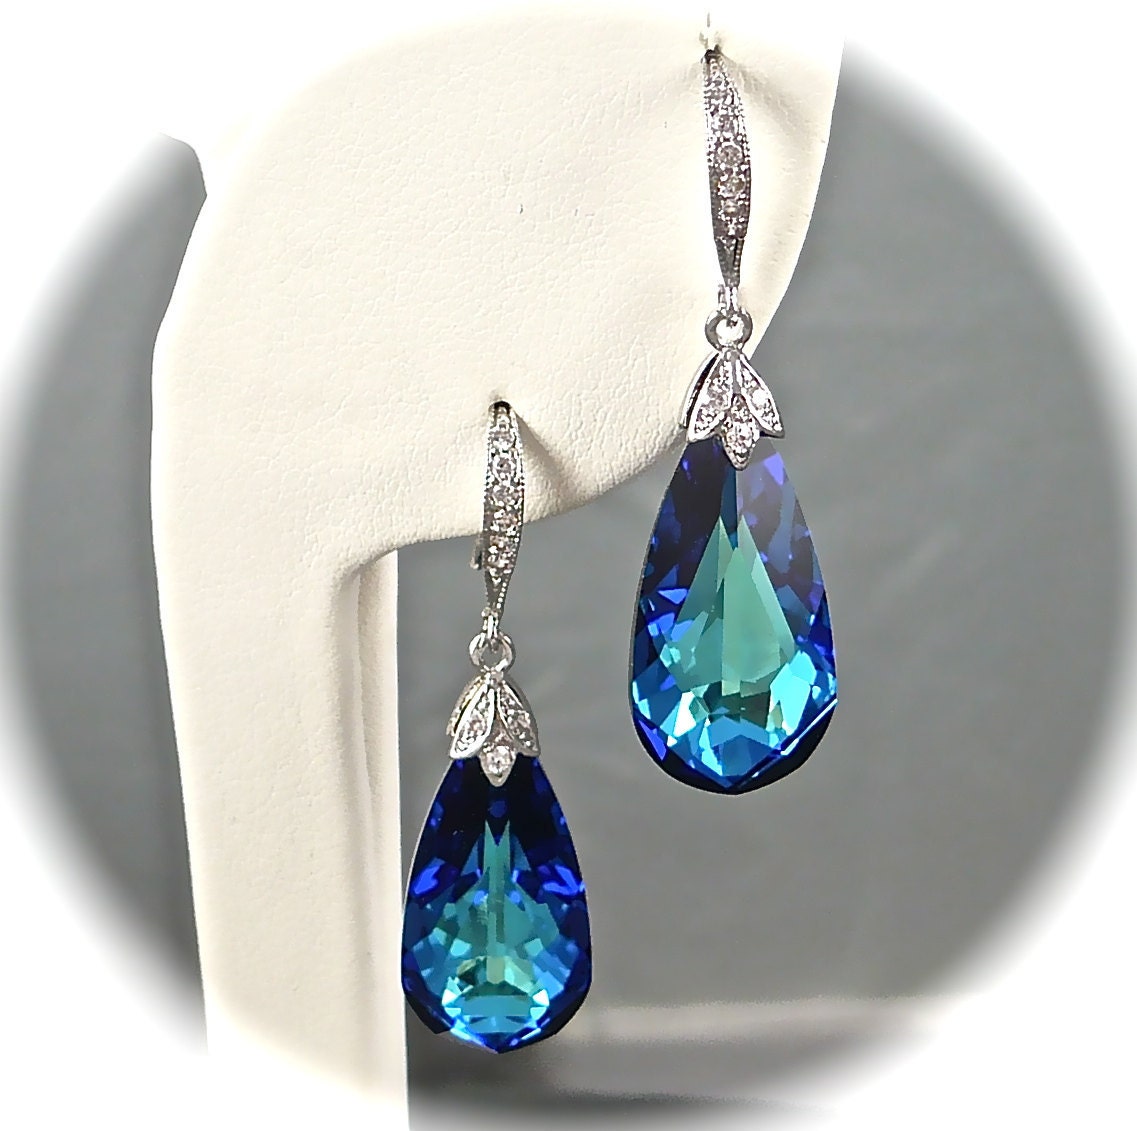 Crystal Bridal Earrings, Bermuda Blue Earrings, Swarovski Crystal Earrings, Teardrop and CZ Sterling Silver Vintage Style Wedding Jewelry - AzureTreasures